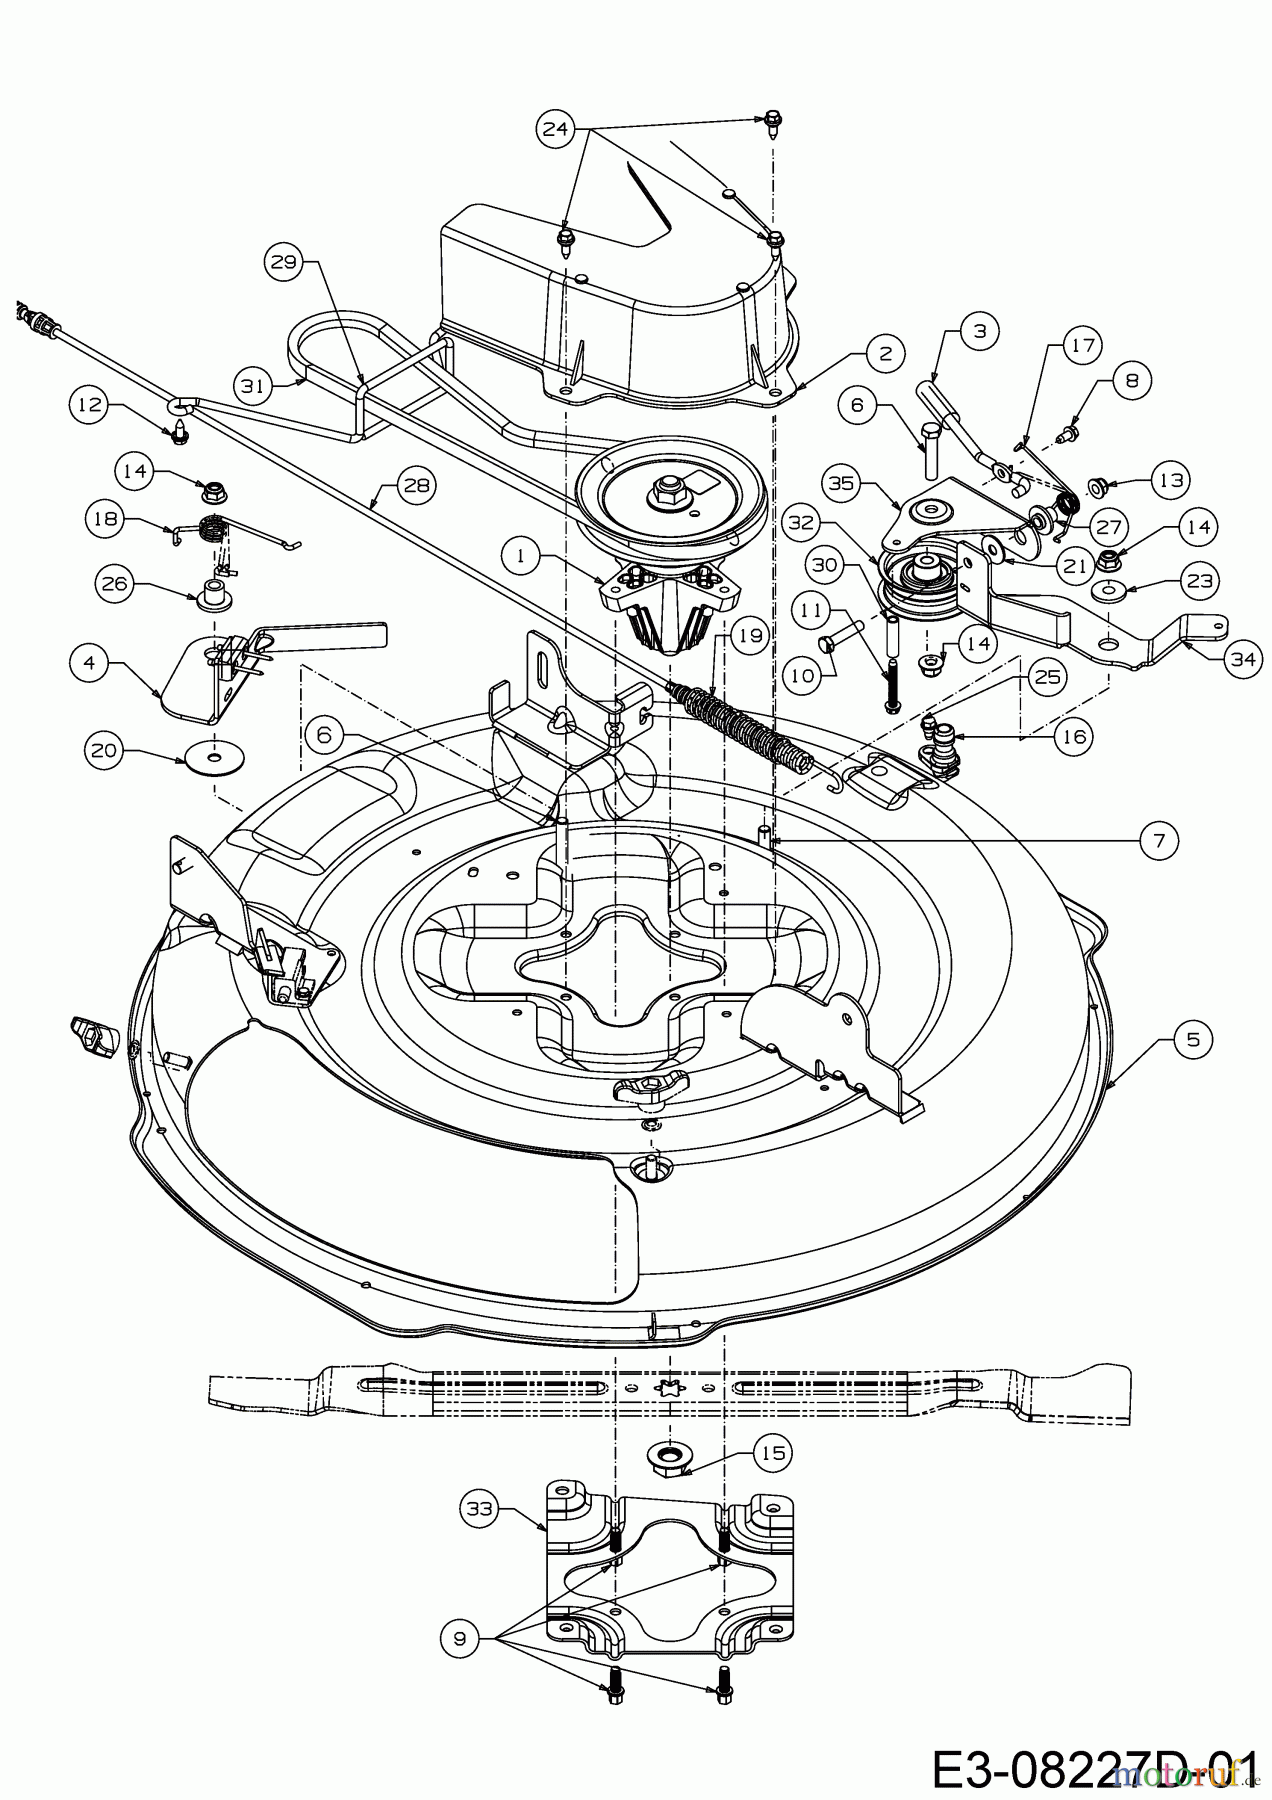  WOLF-Garten Expert Rasentraktoren Scooter Pro Hydro 13A221HD650  (2018) Mähwerk D (30